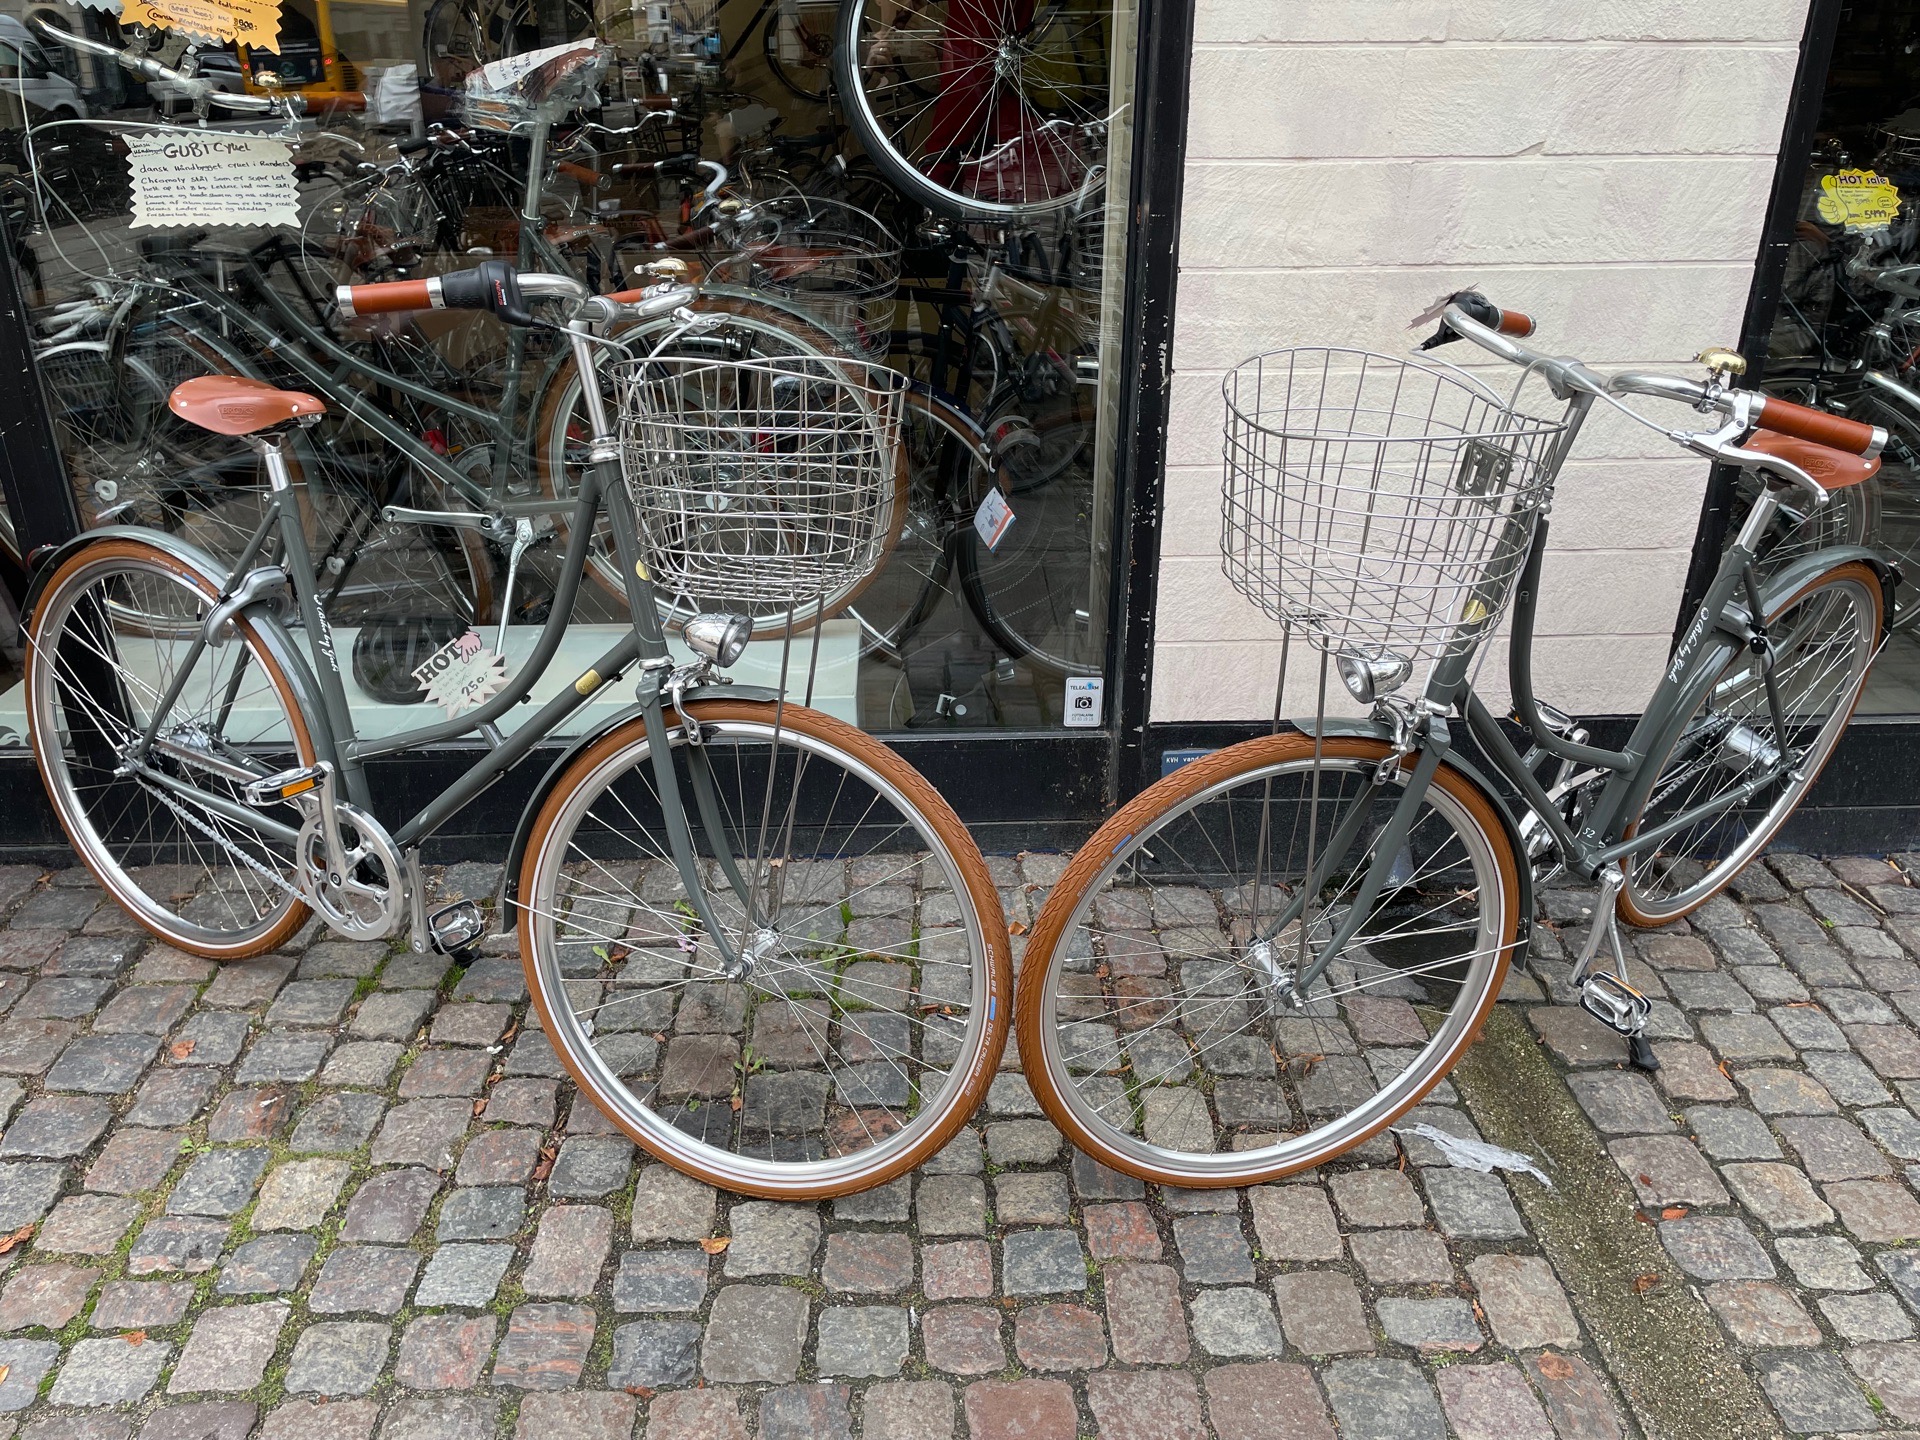 Gubi den dansk håndbygget cykel